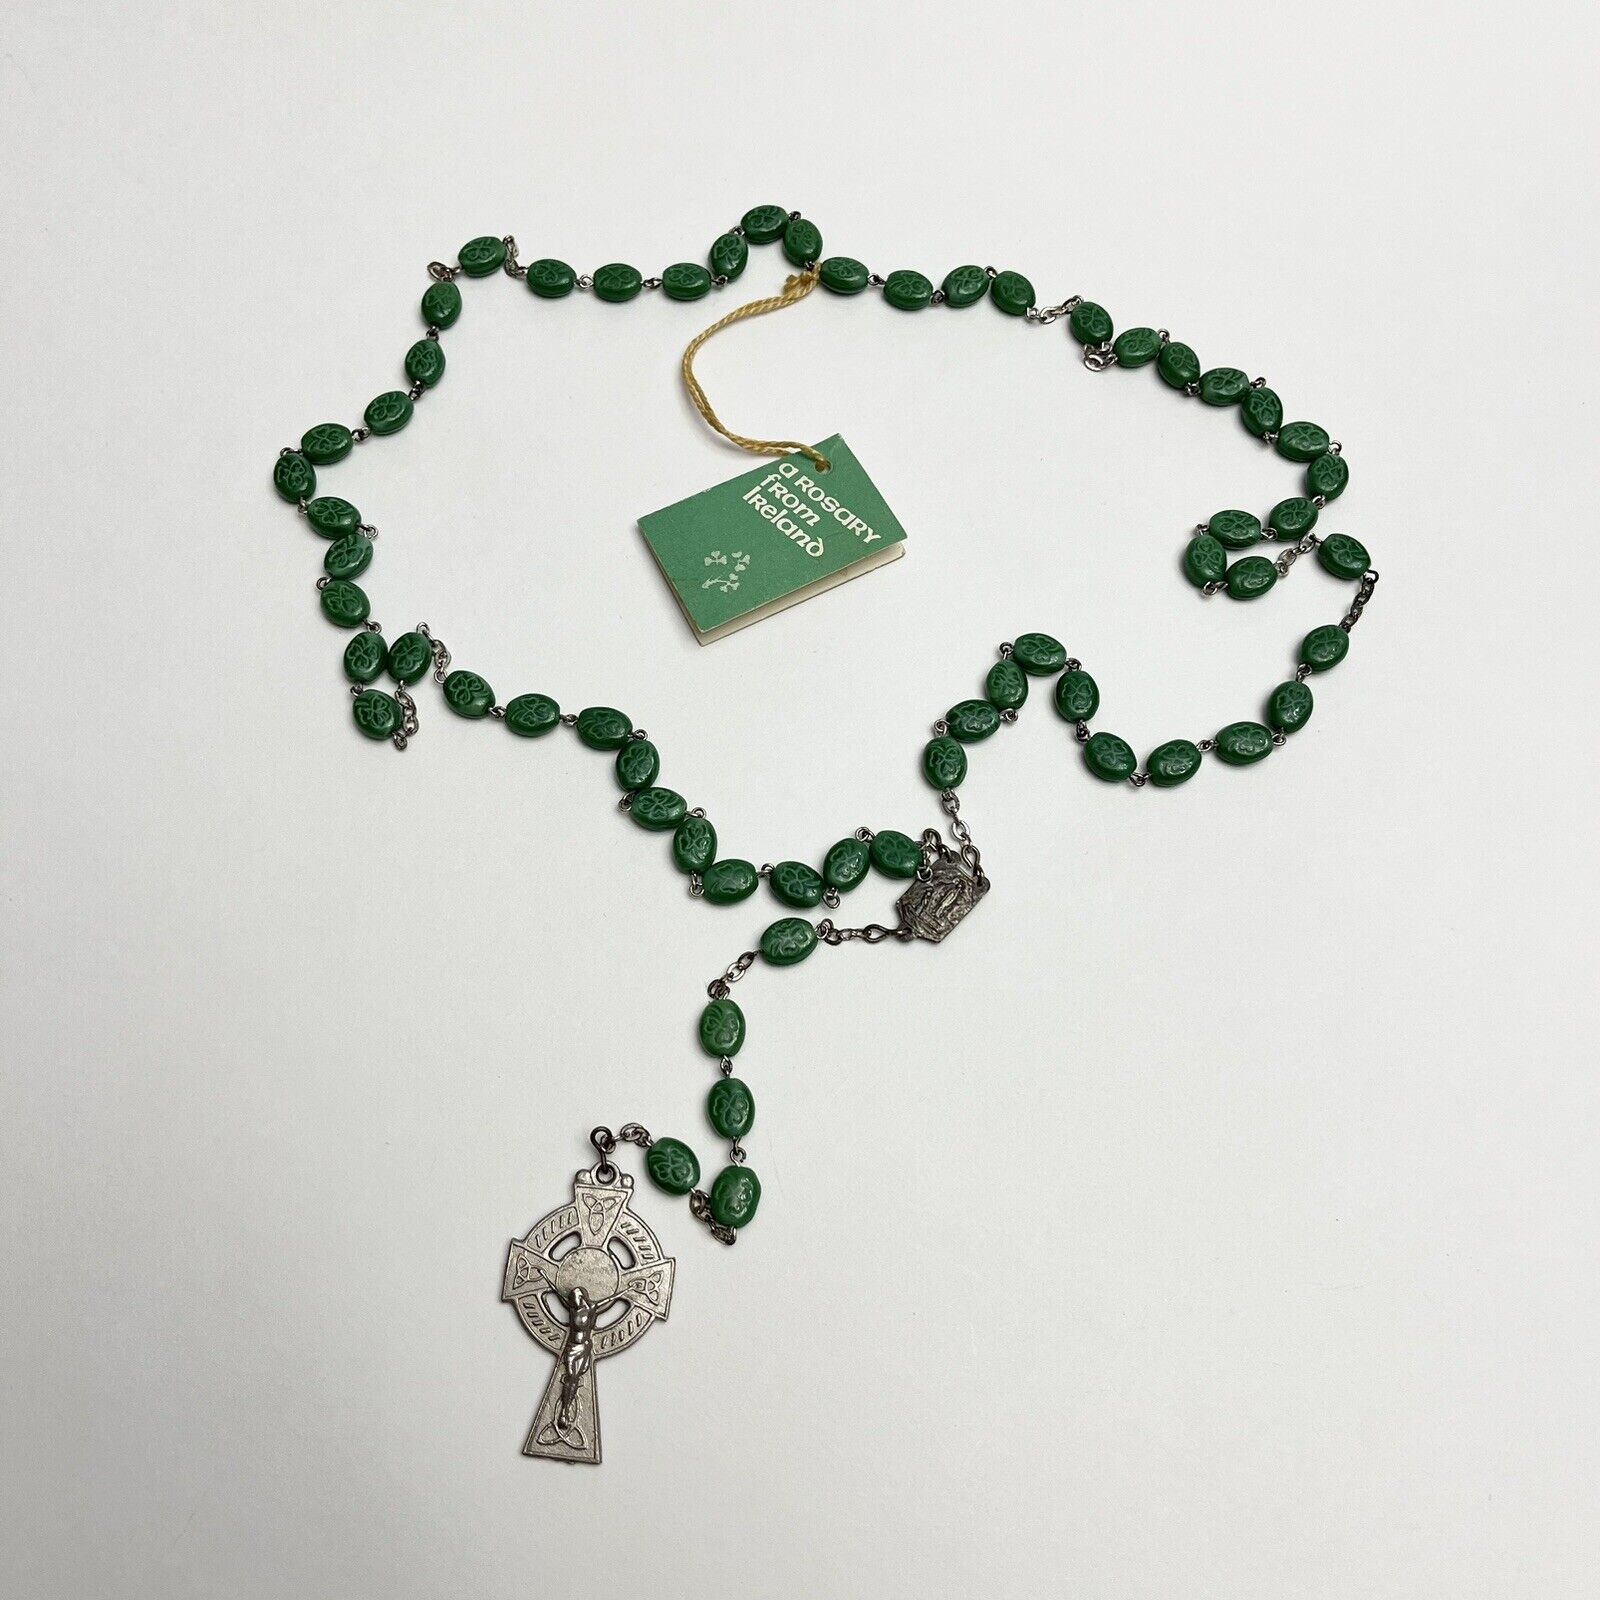 Vintage Irish Catholic Rosary Handmade in Ireland Celtic Clover Shamrocks